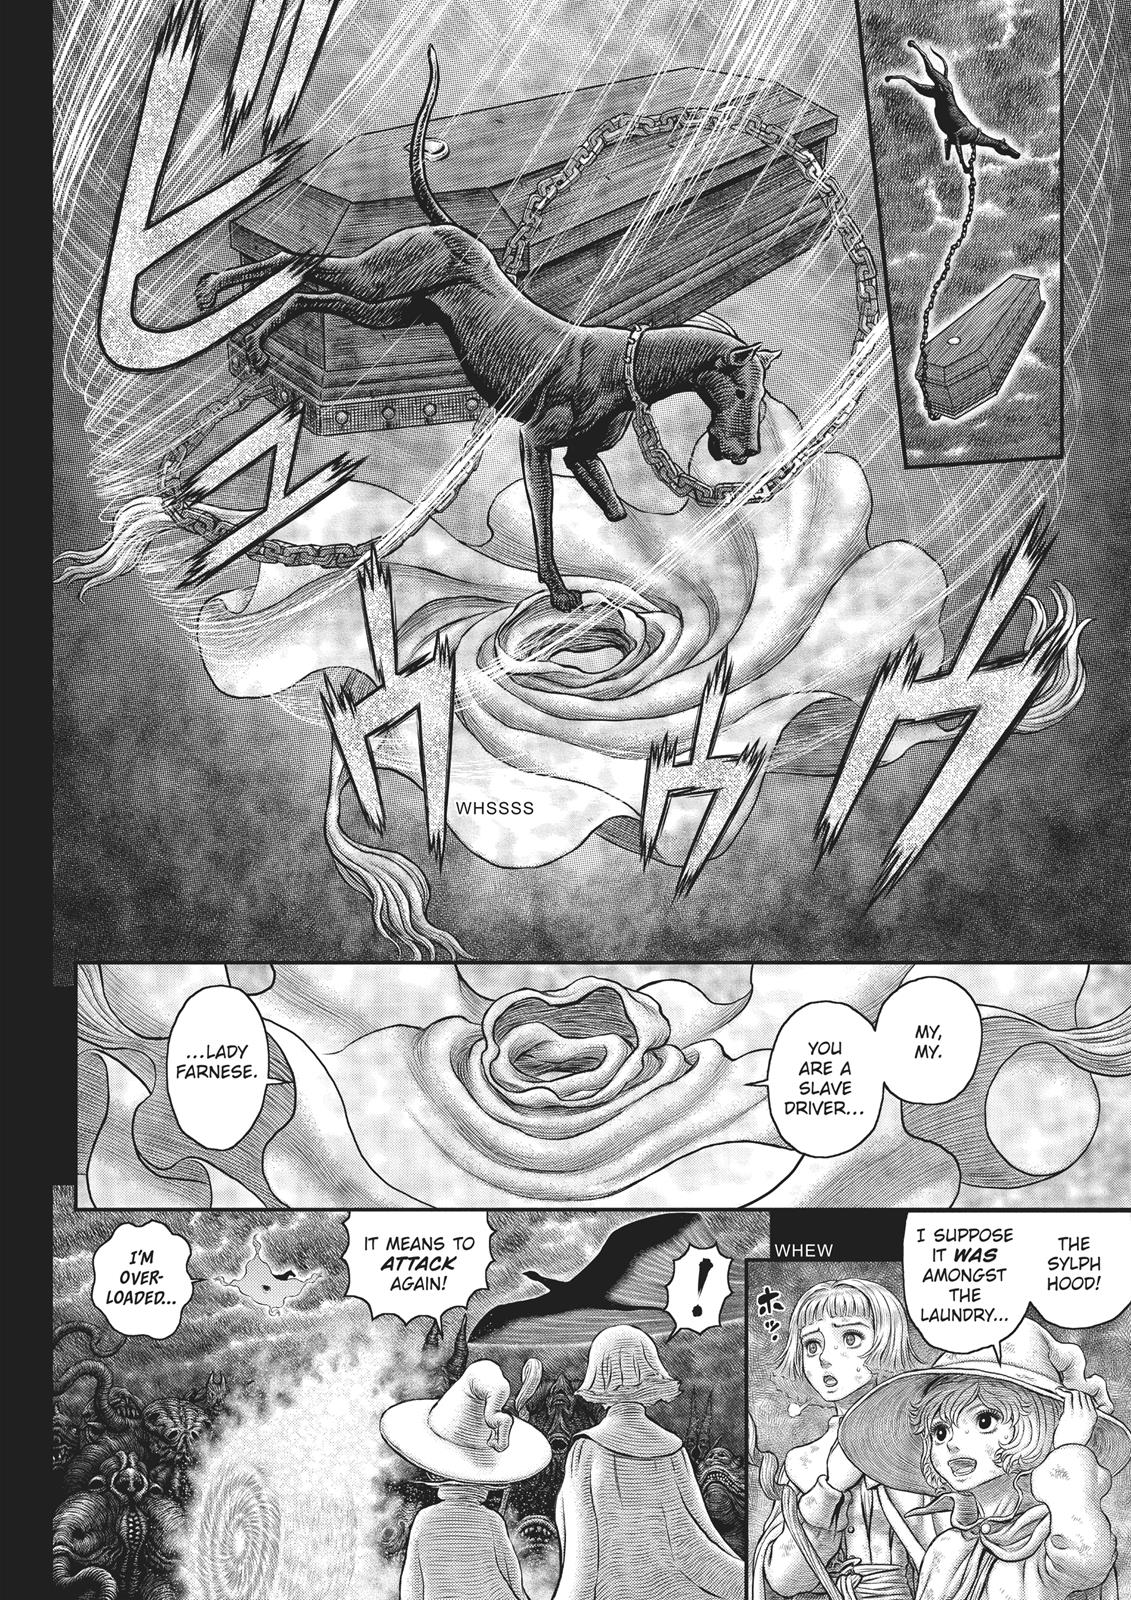 Berserk Manga Chapter 352 image 13